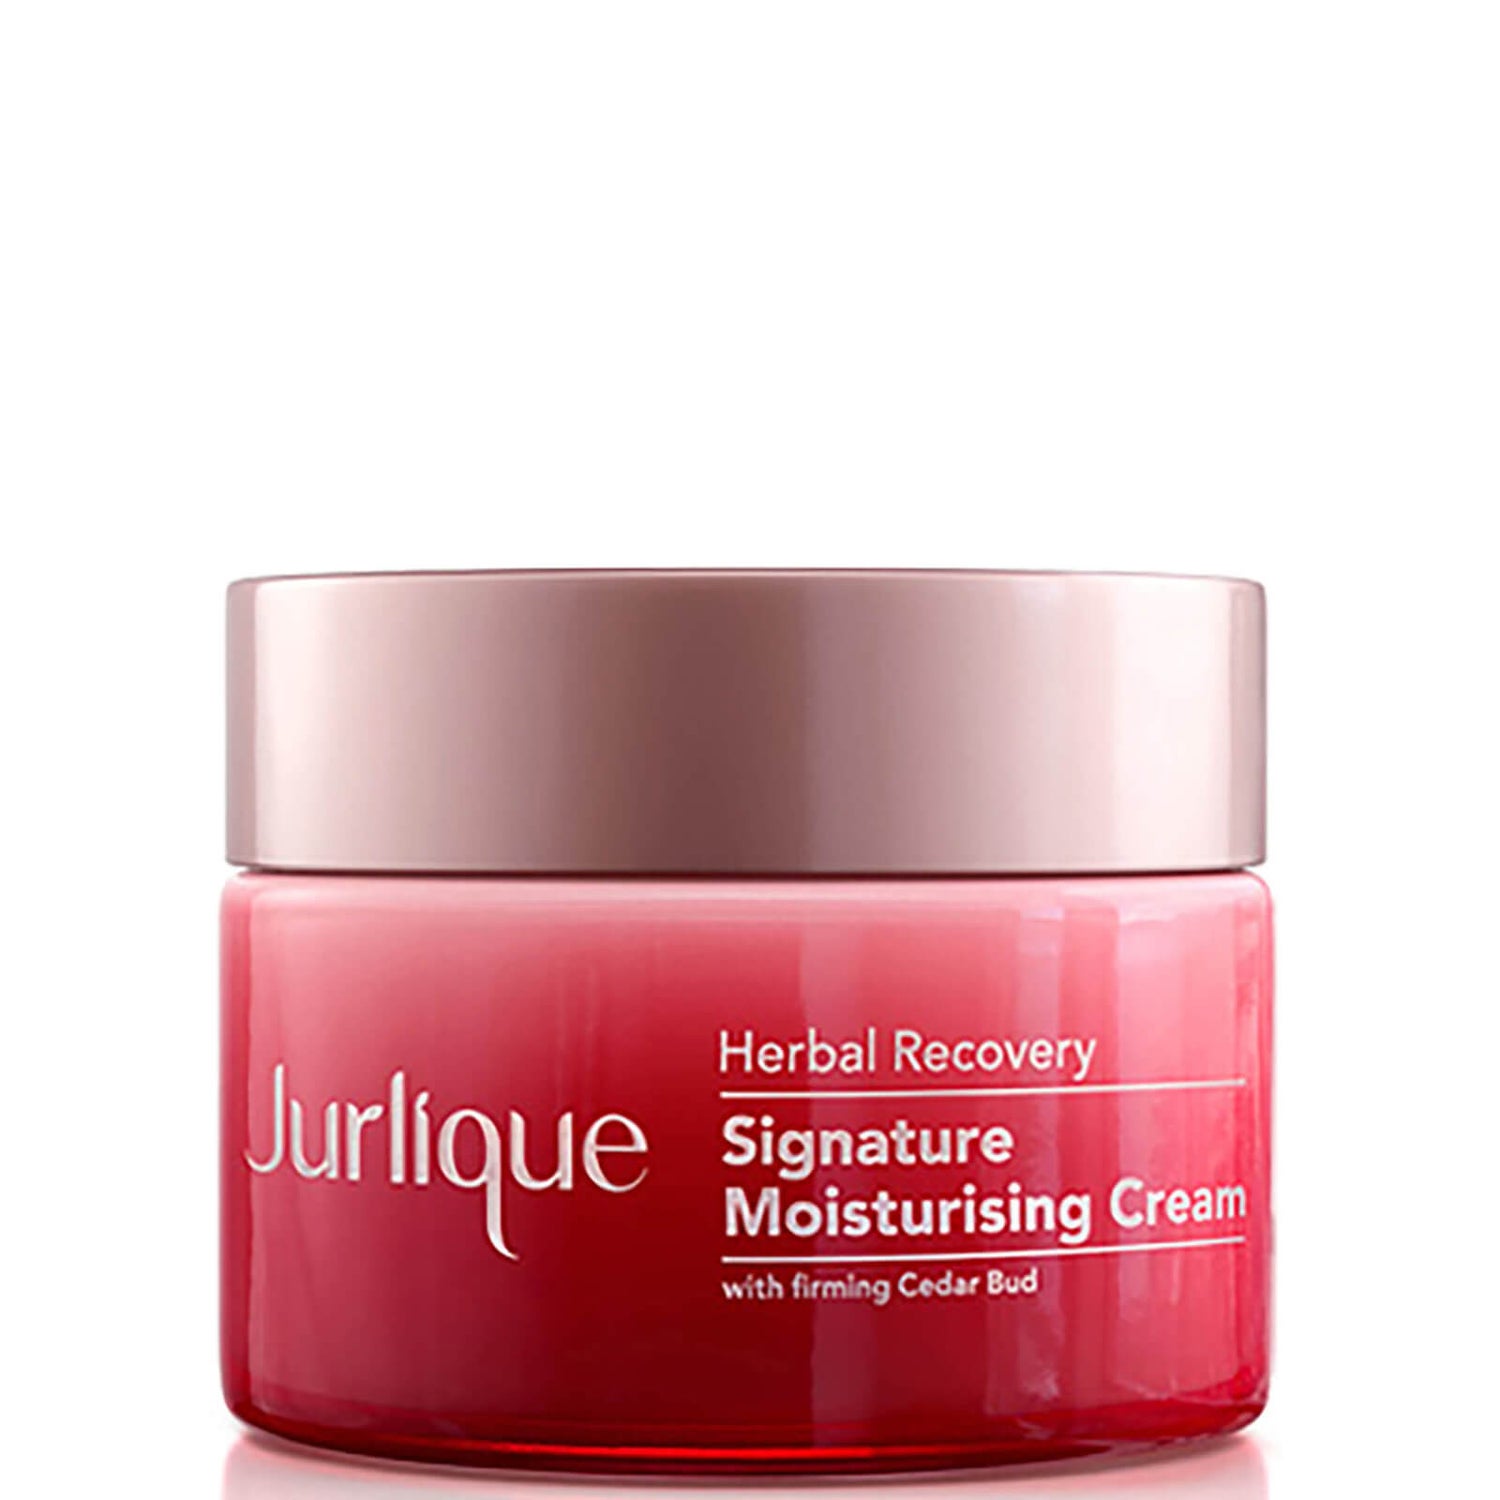 Jurlique Herbal Recovery Signature Moisturising Cream 50 ml